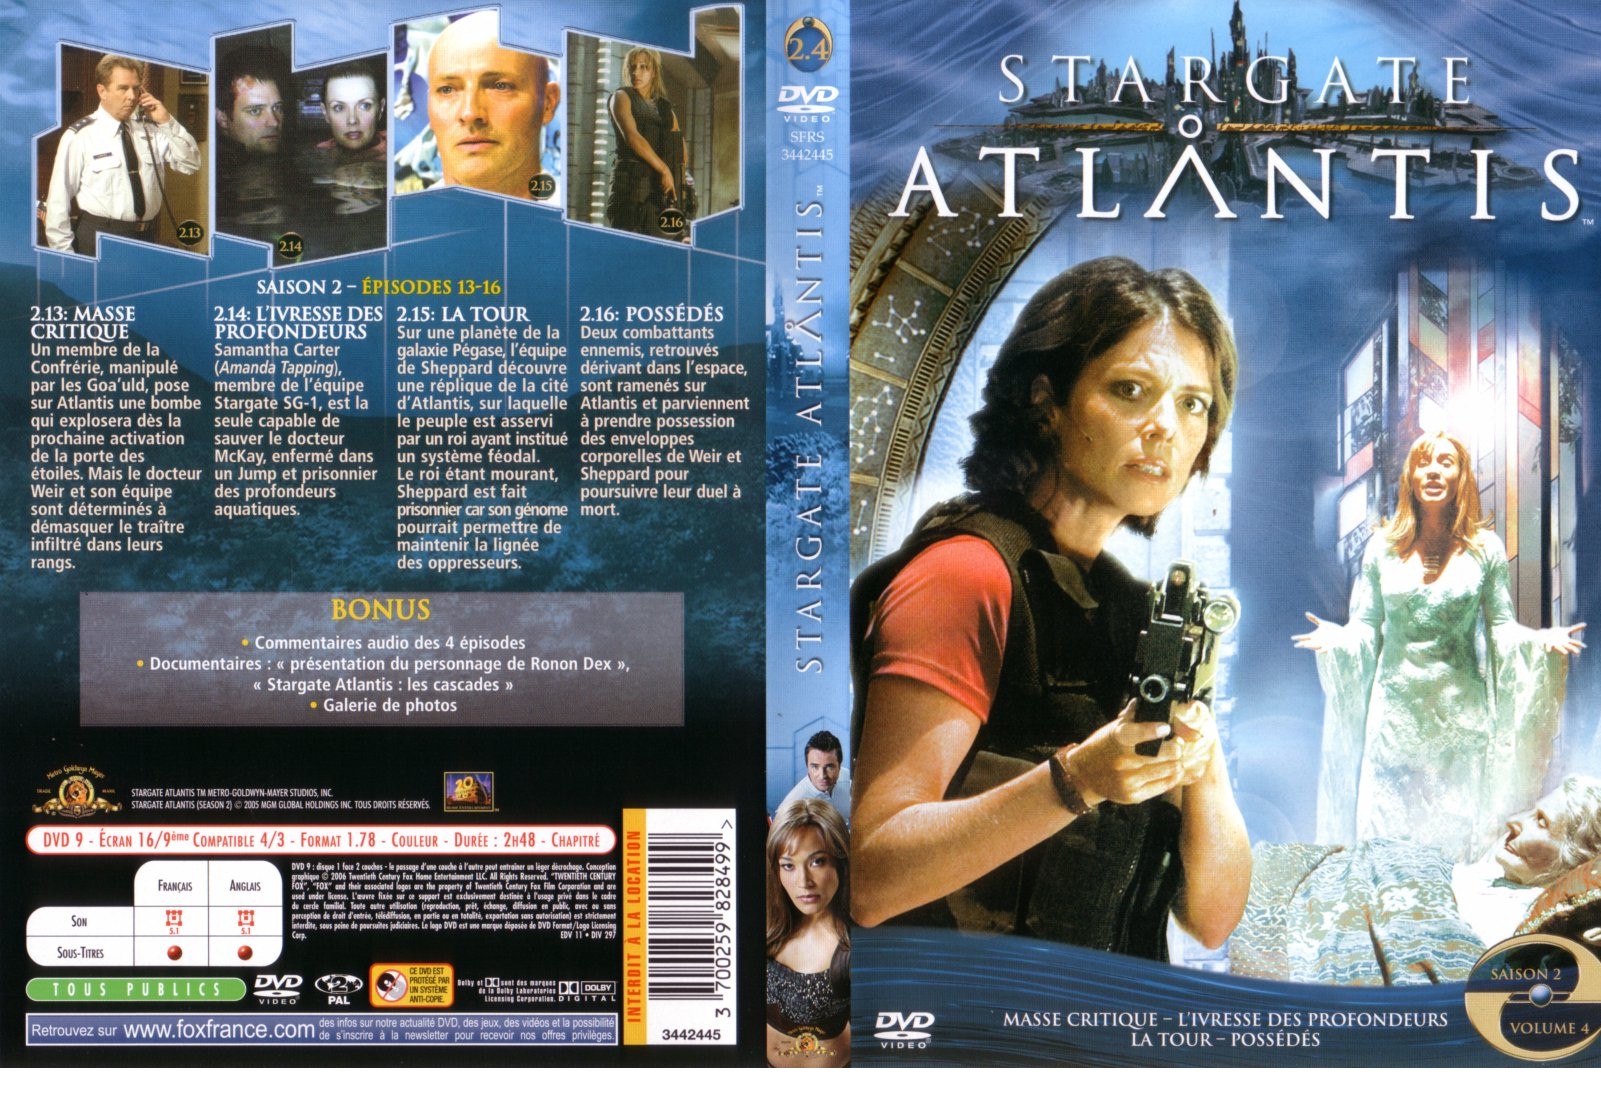 Jaquette DVD Stargate Atlantis saison 2 vol 4